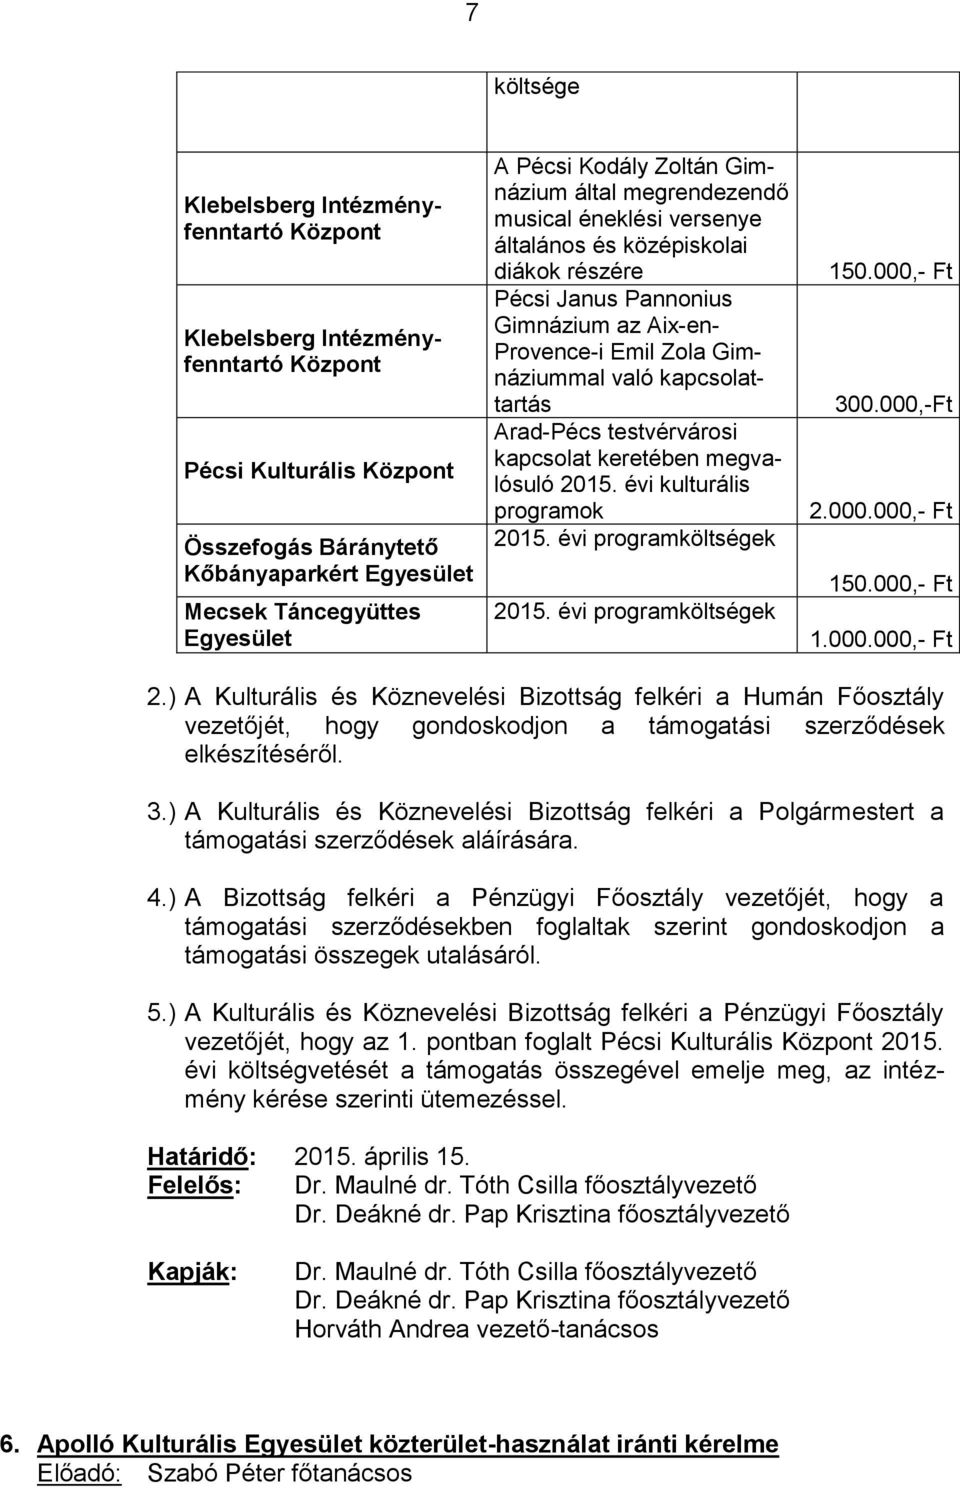 kapcsolattartás Arad-Pécs testvérvárosi kapcsolat keretében megvalósuló 2015. évi kulturális programok 2015. évi programköltségek 2015. évi programköltségek 150.000,- Ft 300.000,-Ft 2.000.000,- Ft 150.